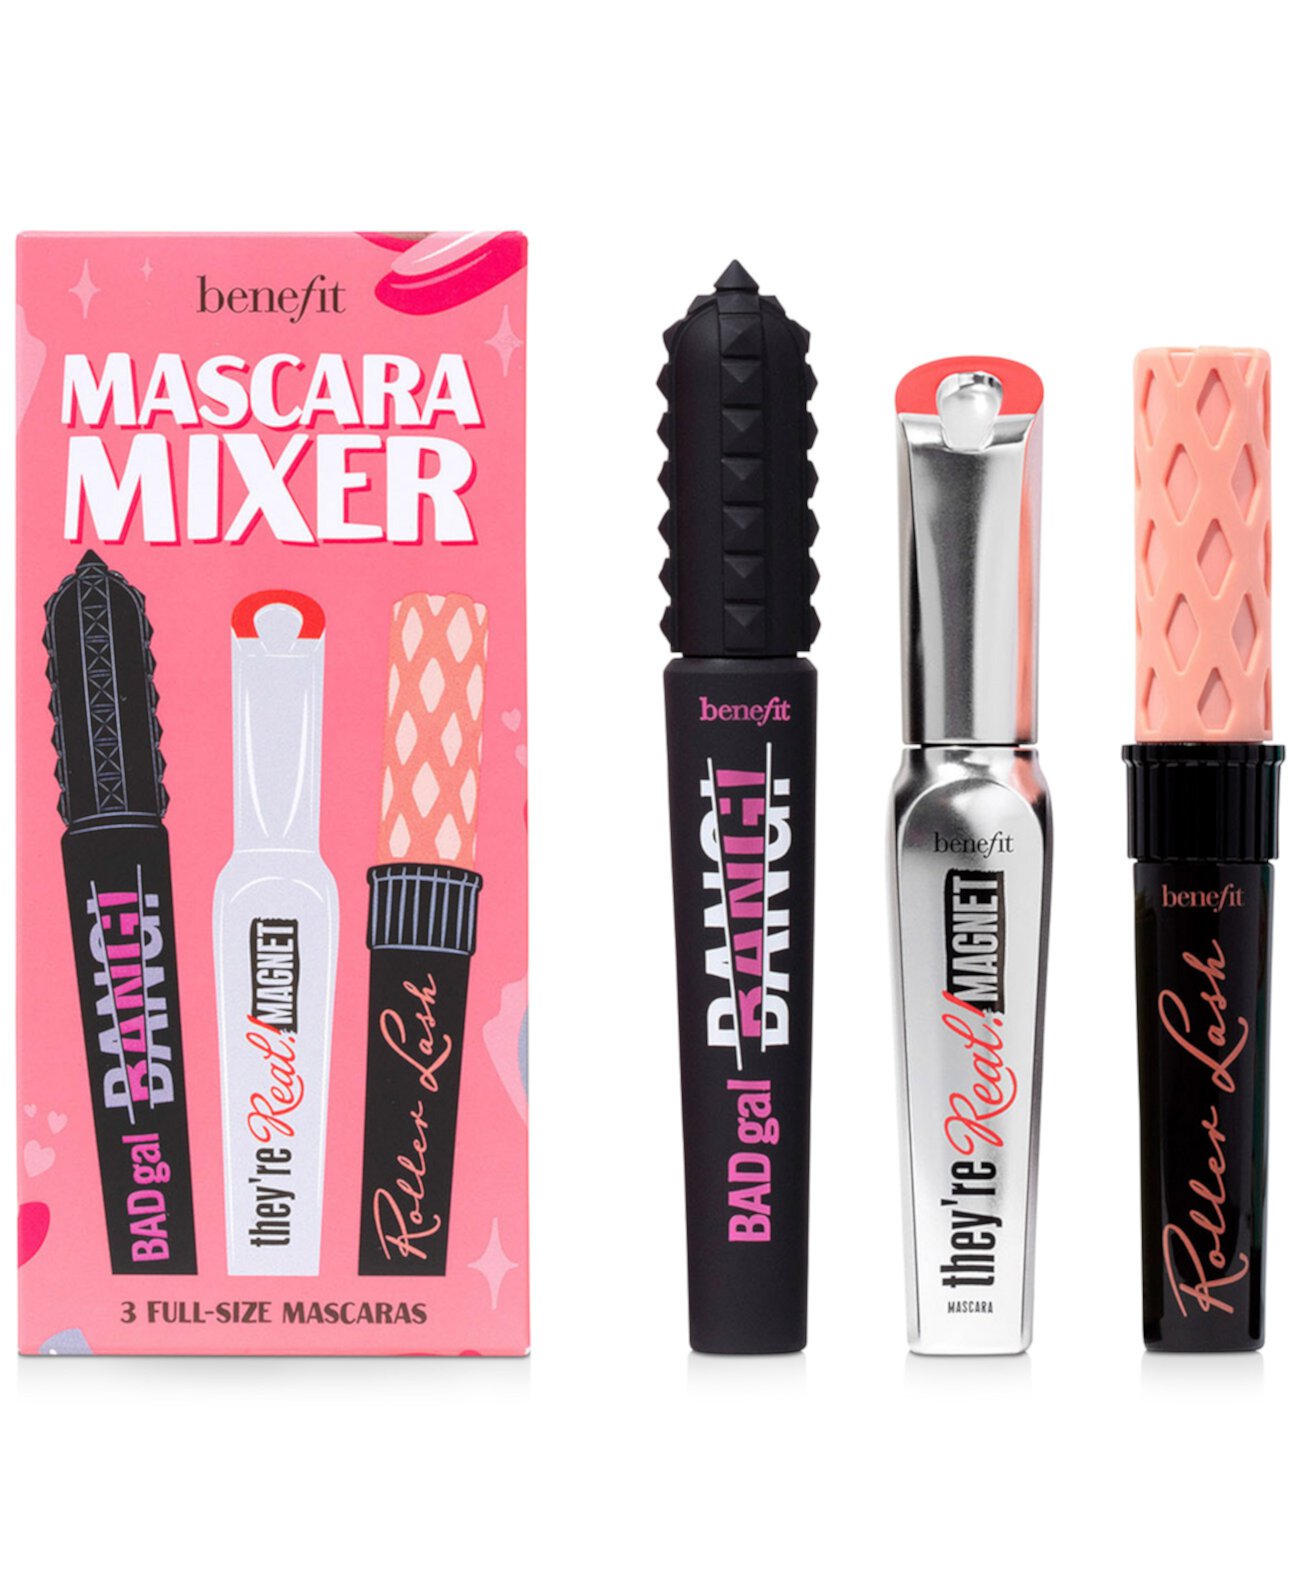 3-шт. Mascara Mixer Full Size Mascara Set Benefit Cosmetics